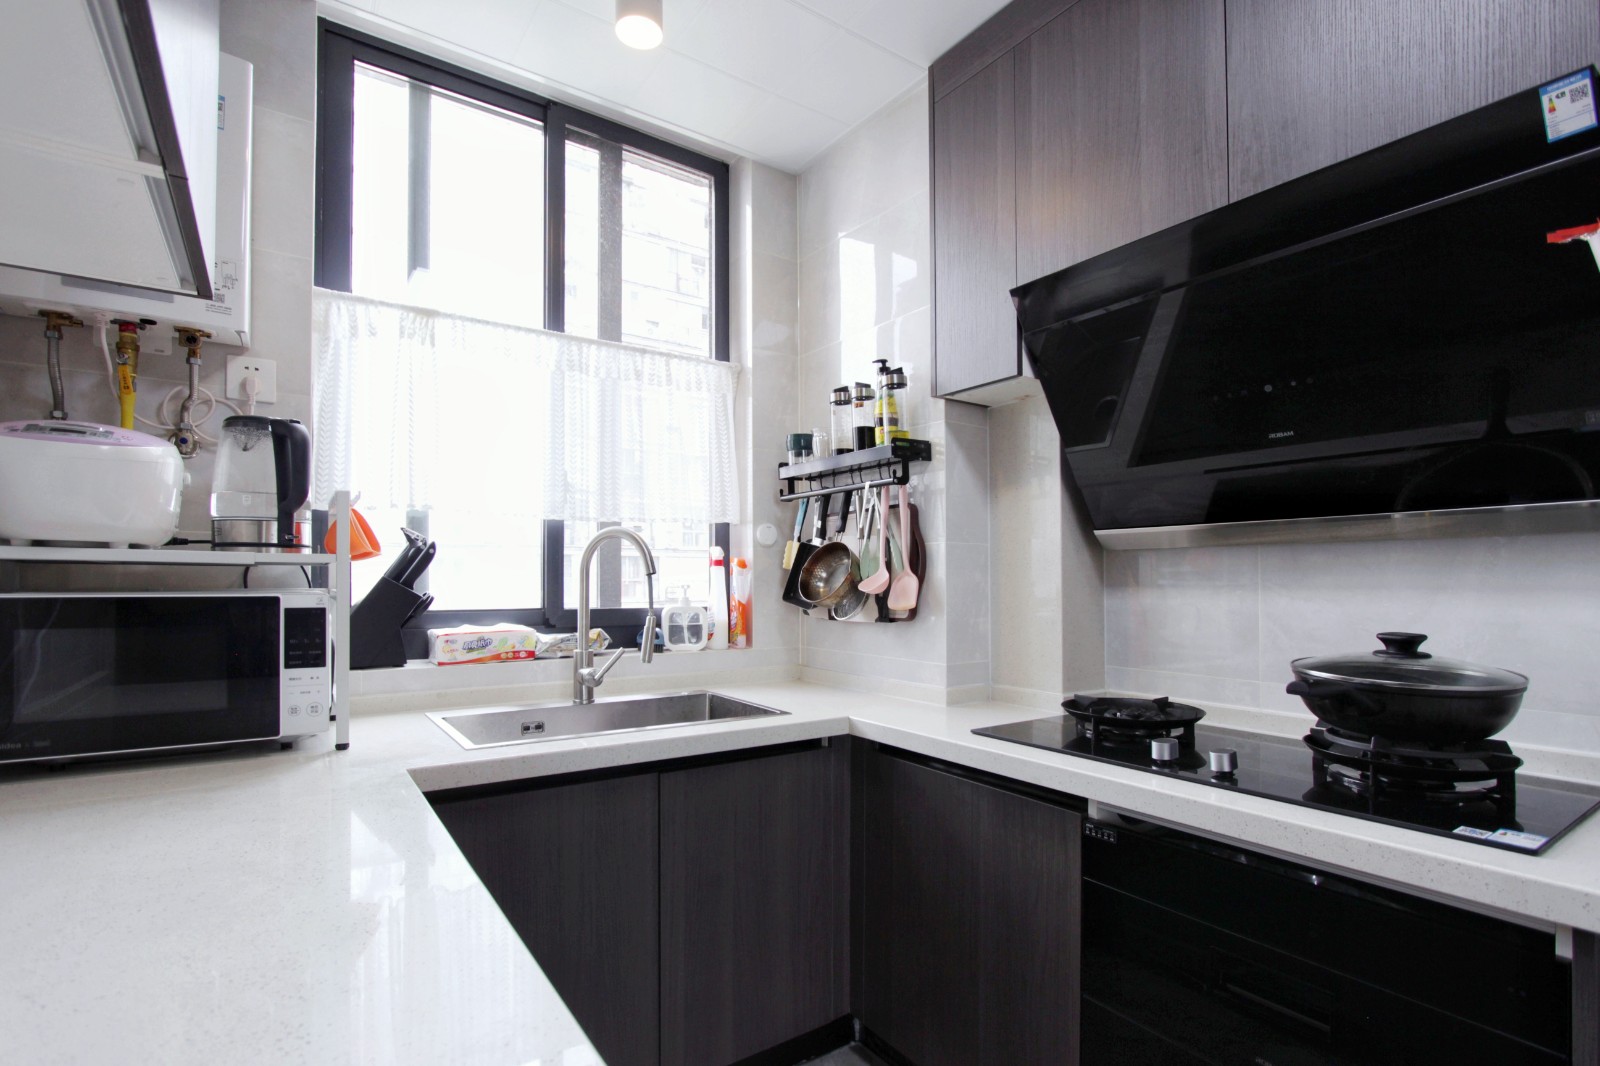 厨房整体为黑白灰色调,黑色橱柜搭配的是白色台面与灰色大理石地砖